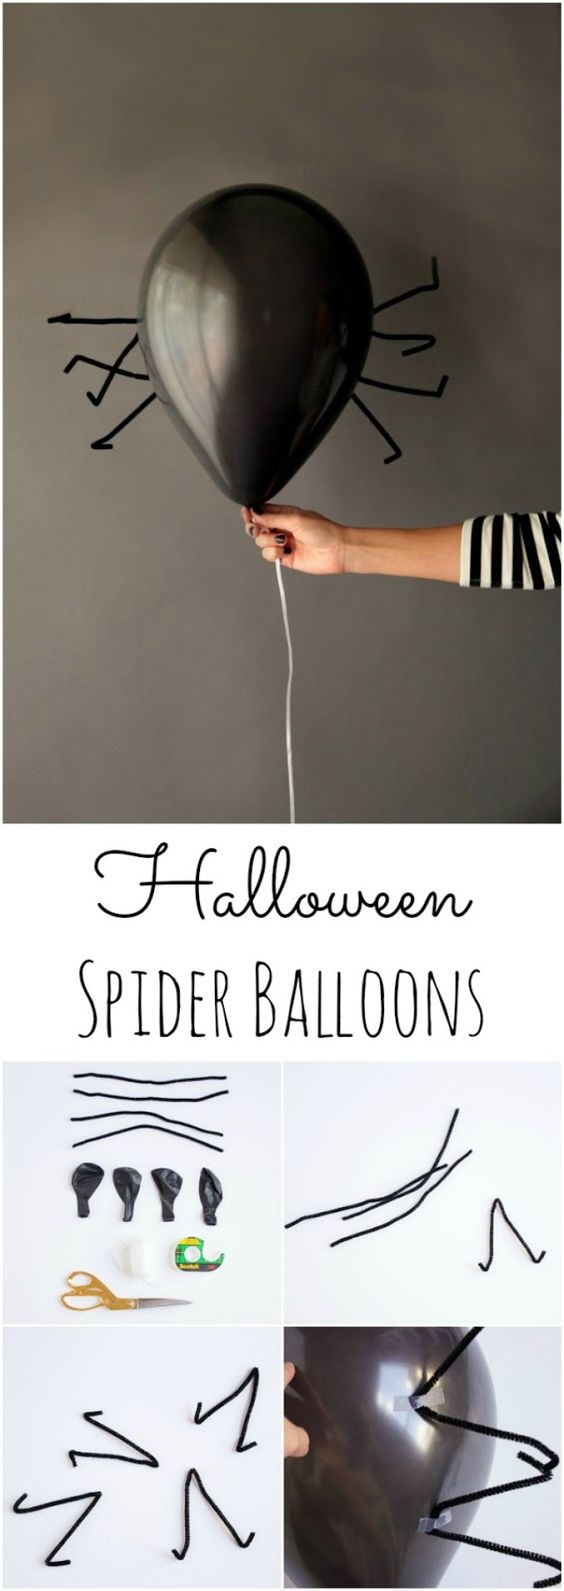 10 ideas sorprendentes para decorar con globos en Halloween 7